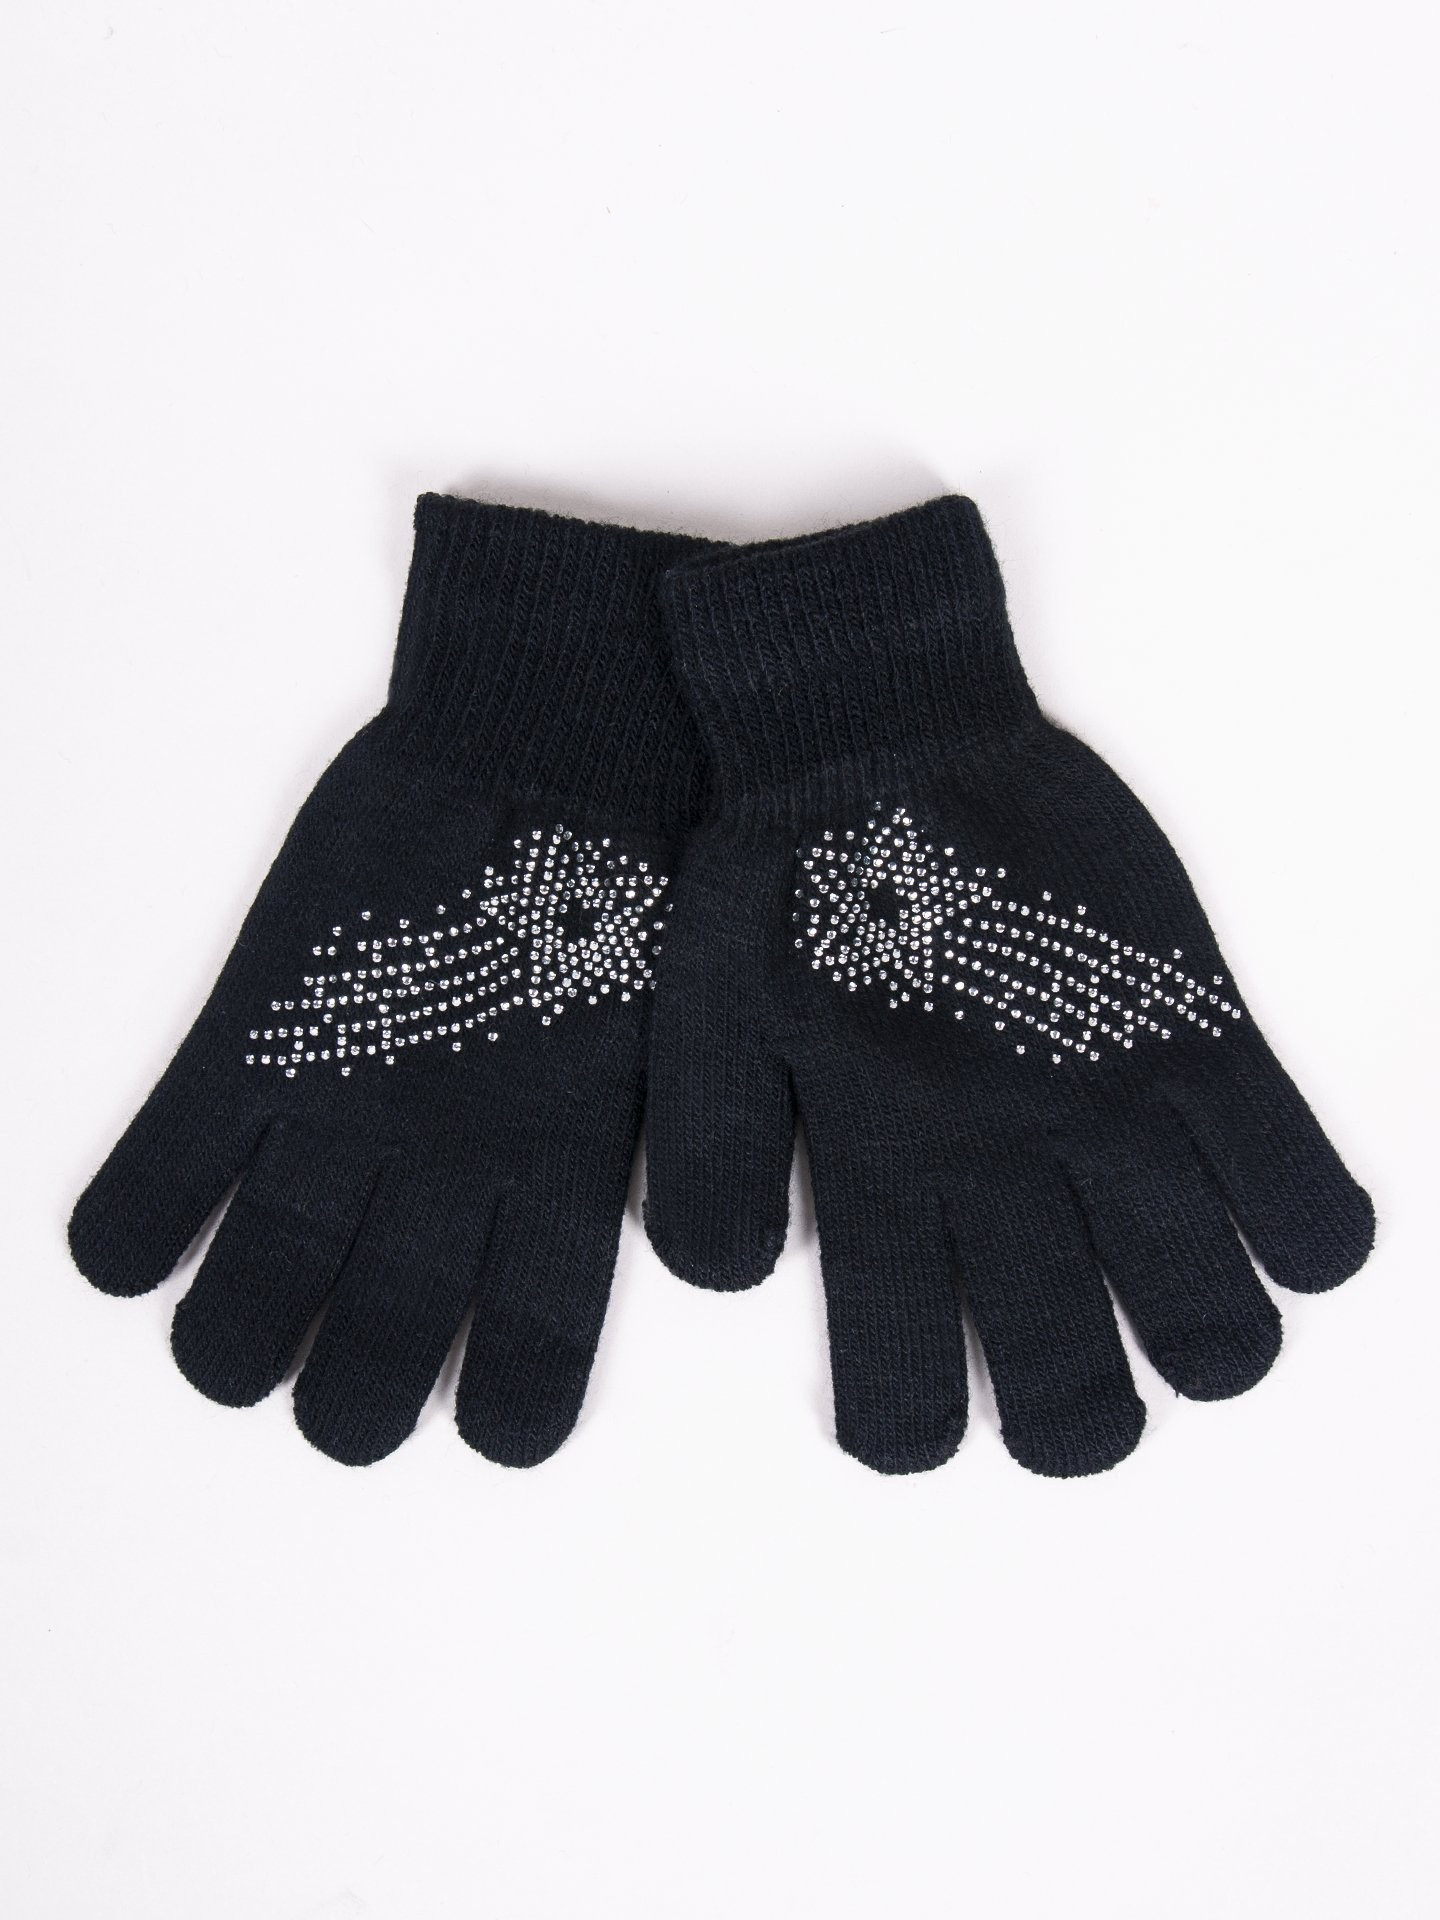 Dívčí pětiprsté rukavice Yoclub s tryskami RED-0216G-AA50-007 Black 18